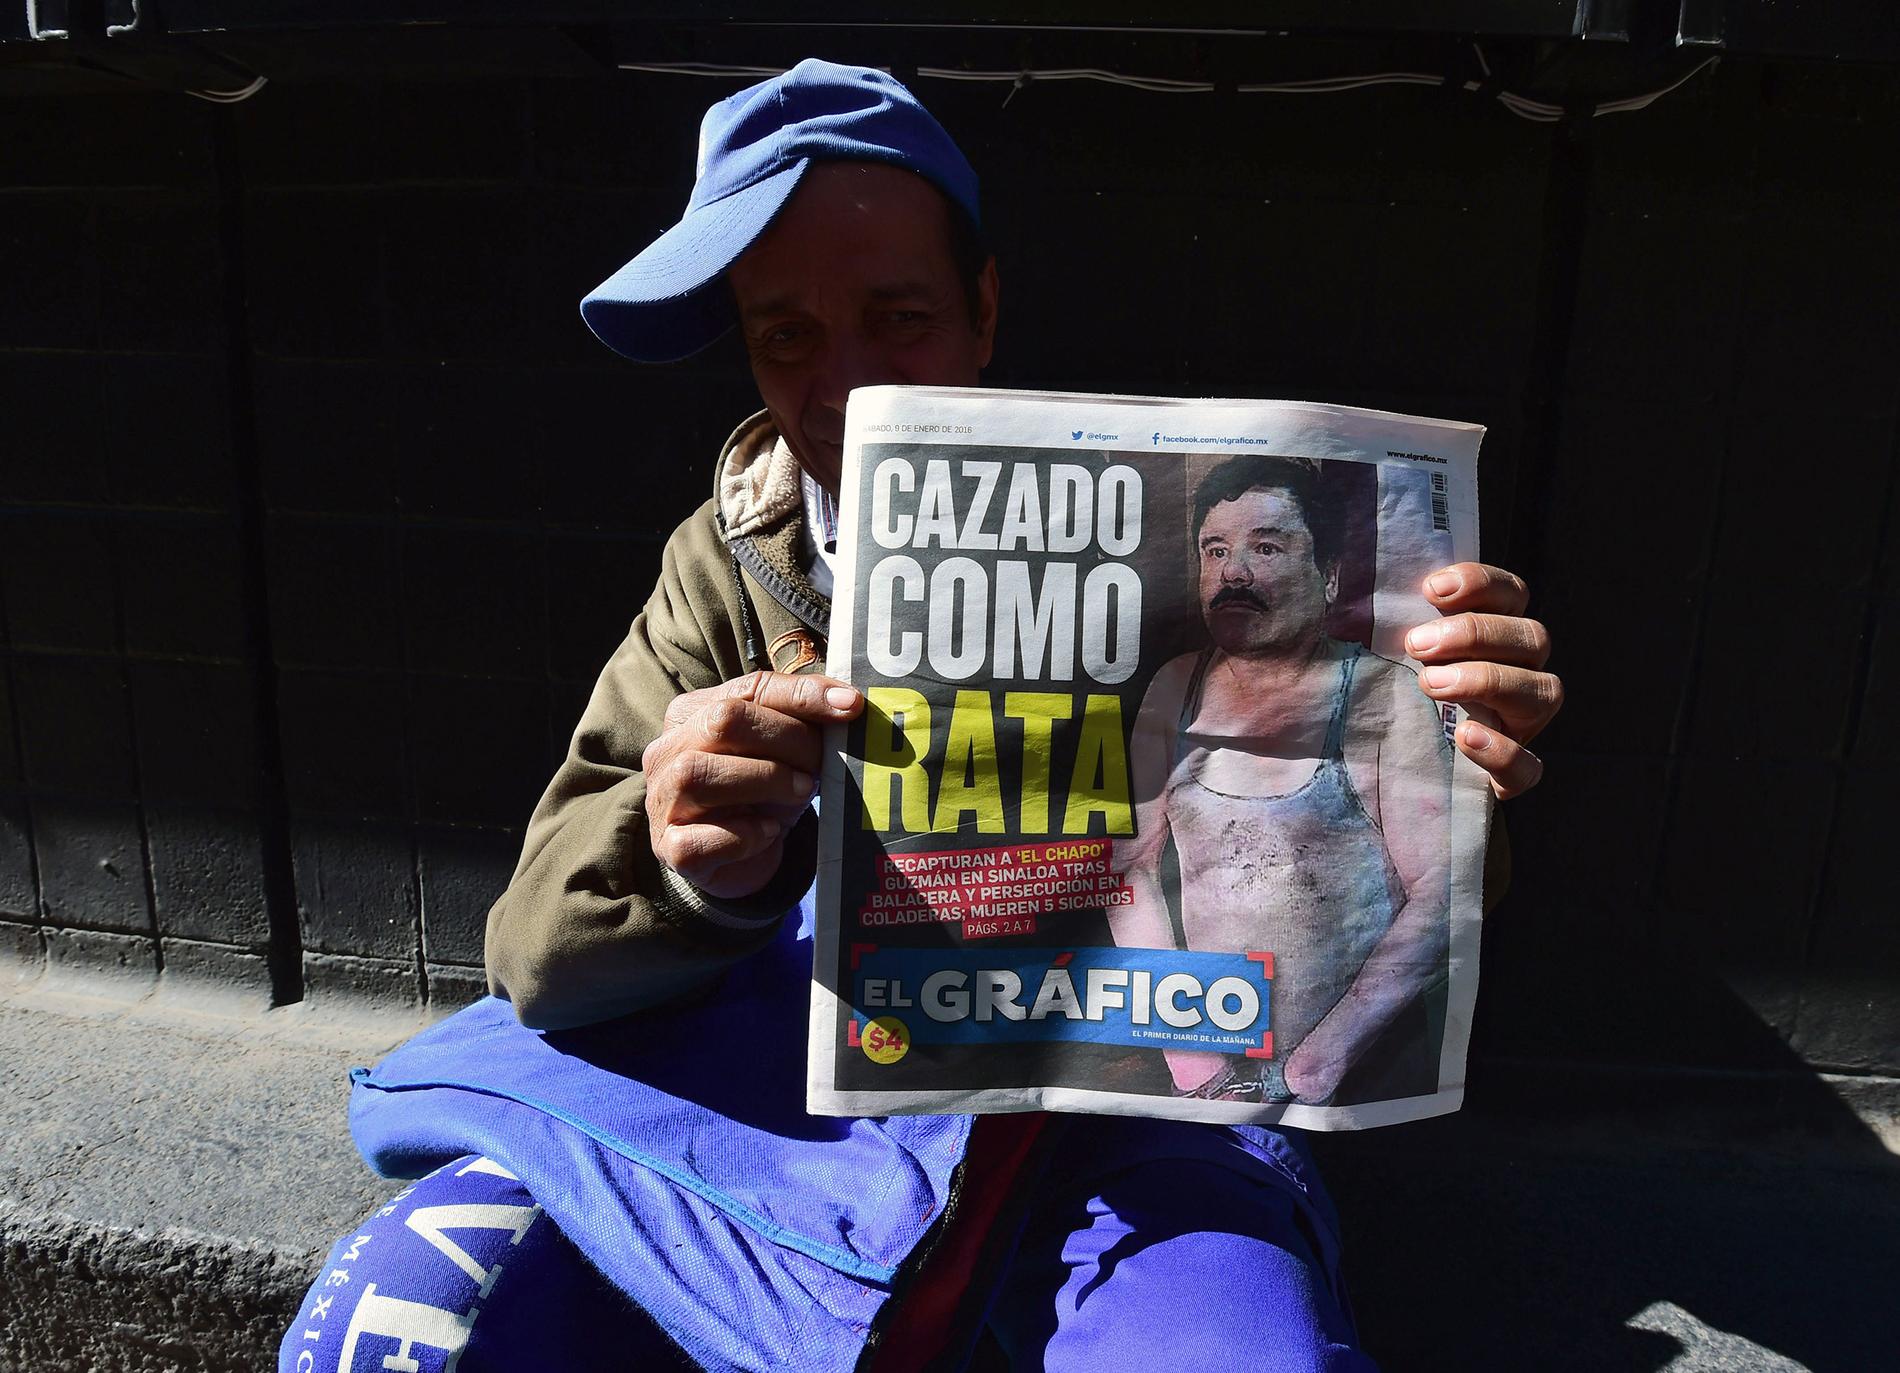 En tidningsförsäljare i Mexico City visar upp tidningen El Grafico som har rubriken "jagad som en råtta"